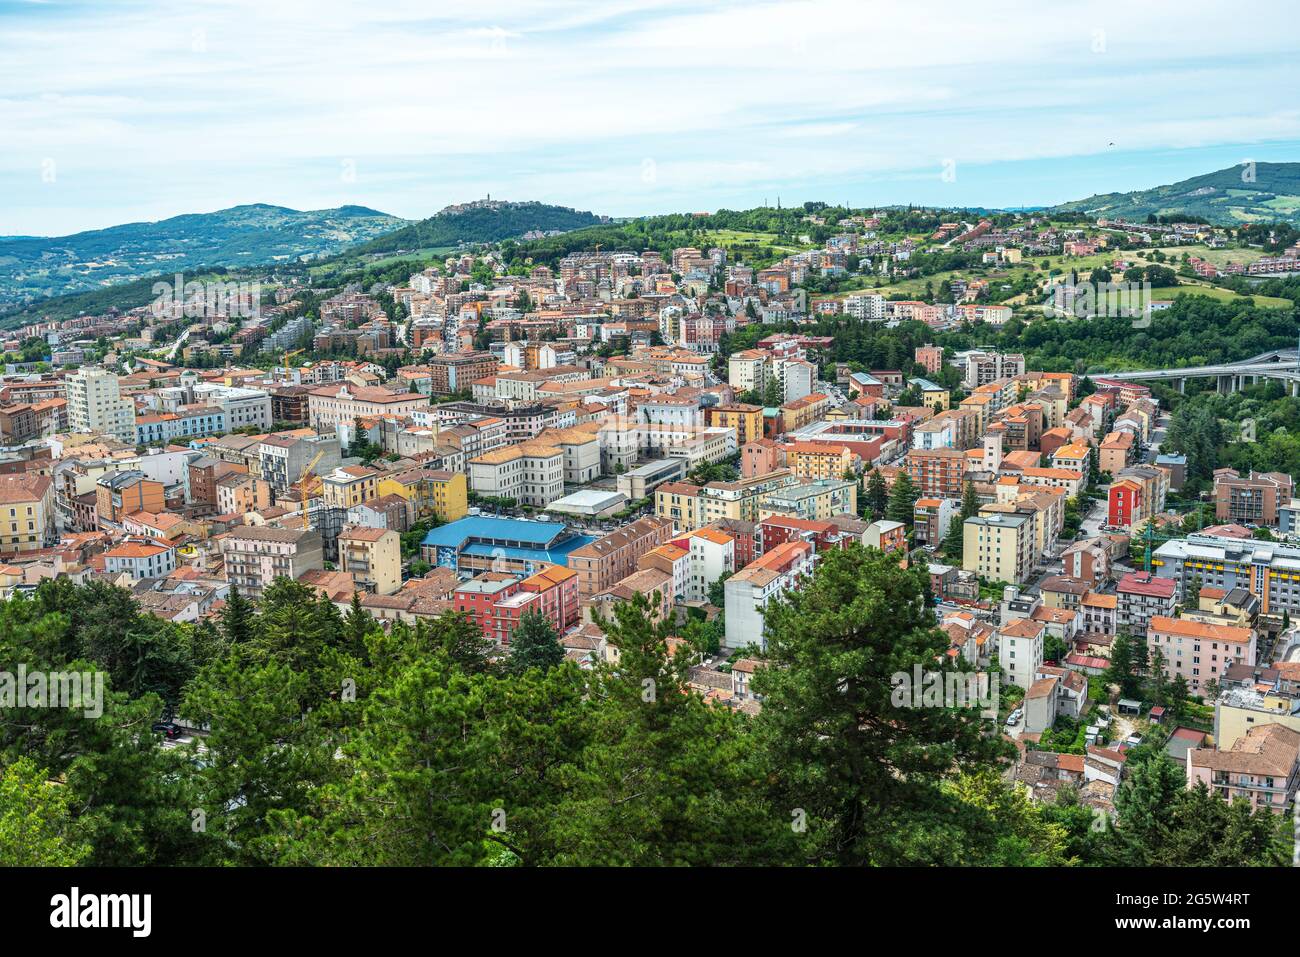 Vue de dessus de la ville de Campobasso, la capitale provinciale de la région de Molise. Molise, Italie, Europe Banque D'Images